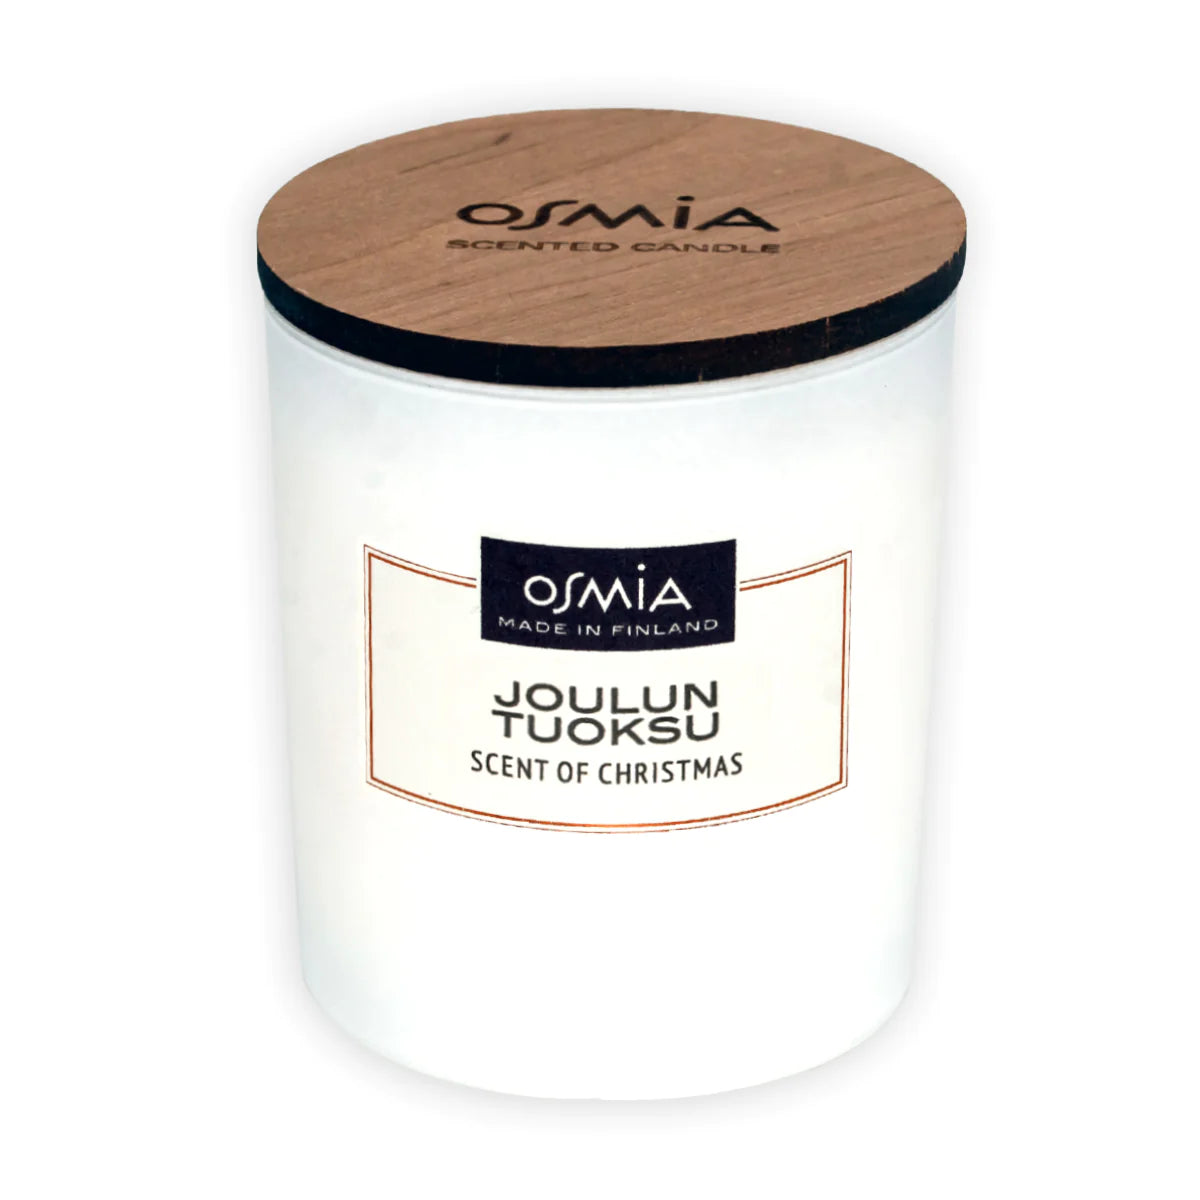 Osmia-tuoksukynttilä (150g)